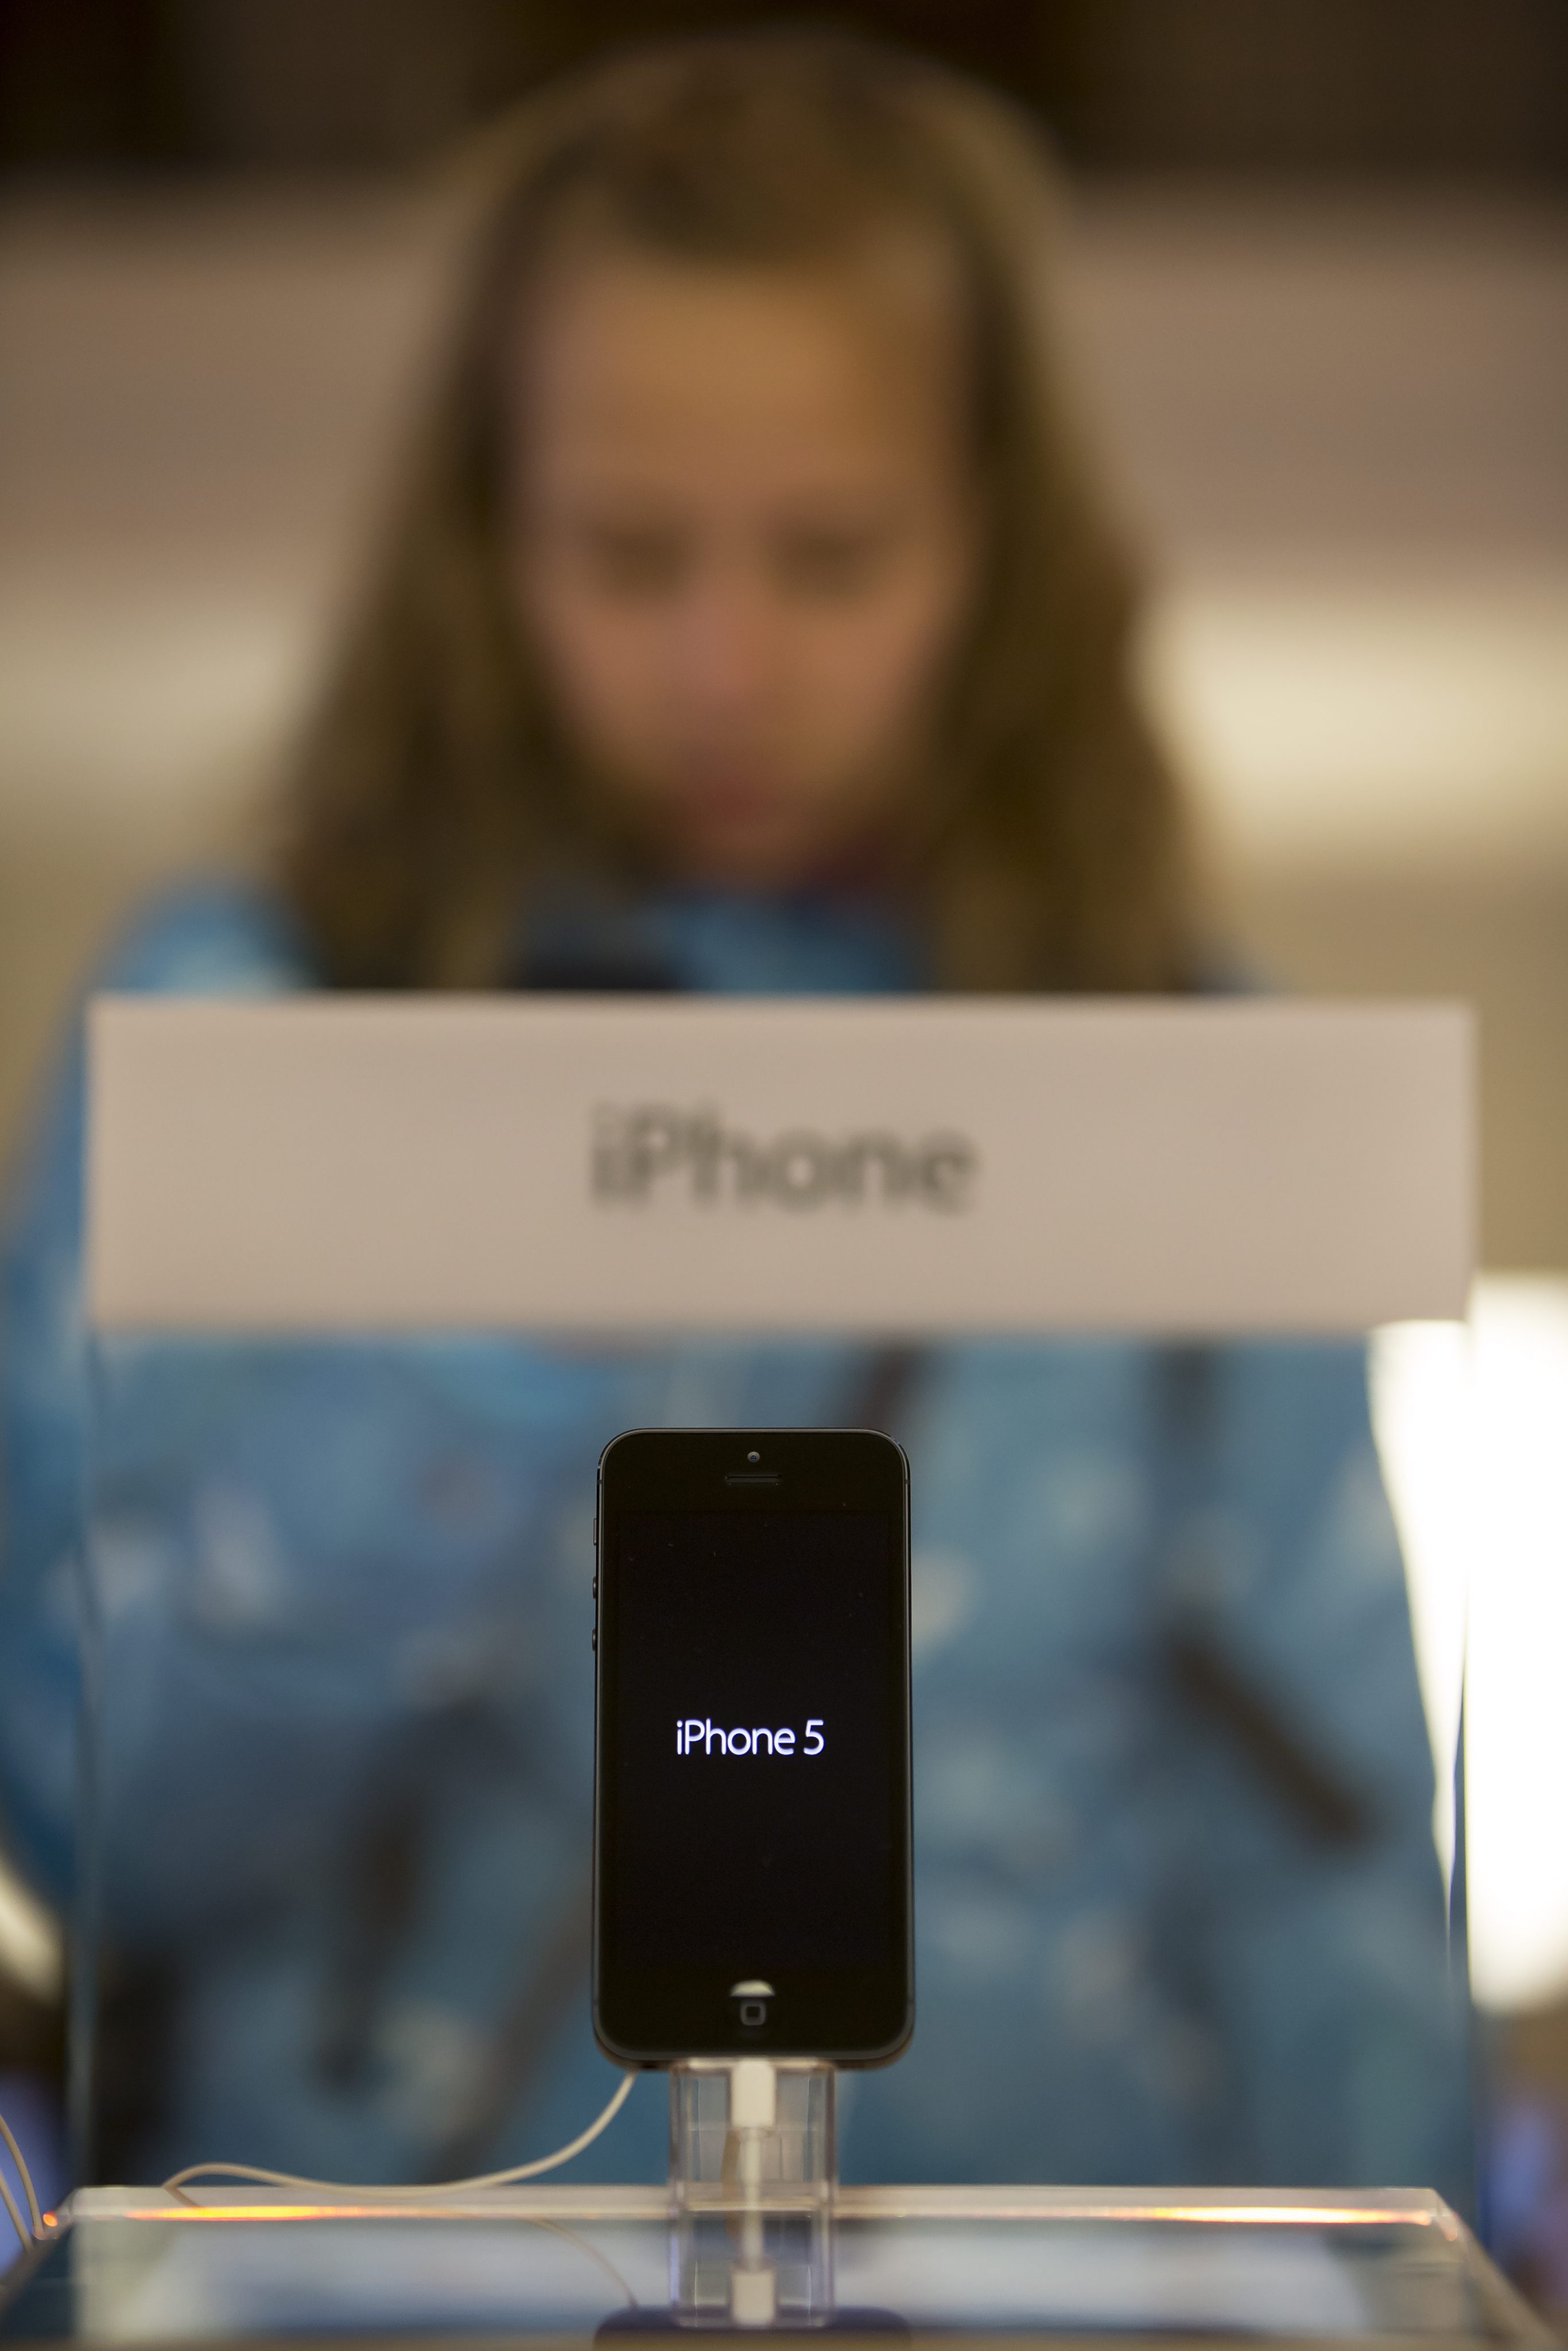 ”Цунамито” iPhone 5 трябвало да бъде ”неутрализирано”, посочил Дейл Сон от Samsung в имейл